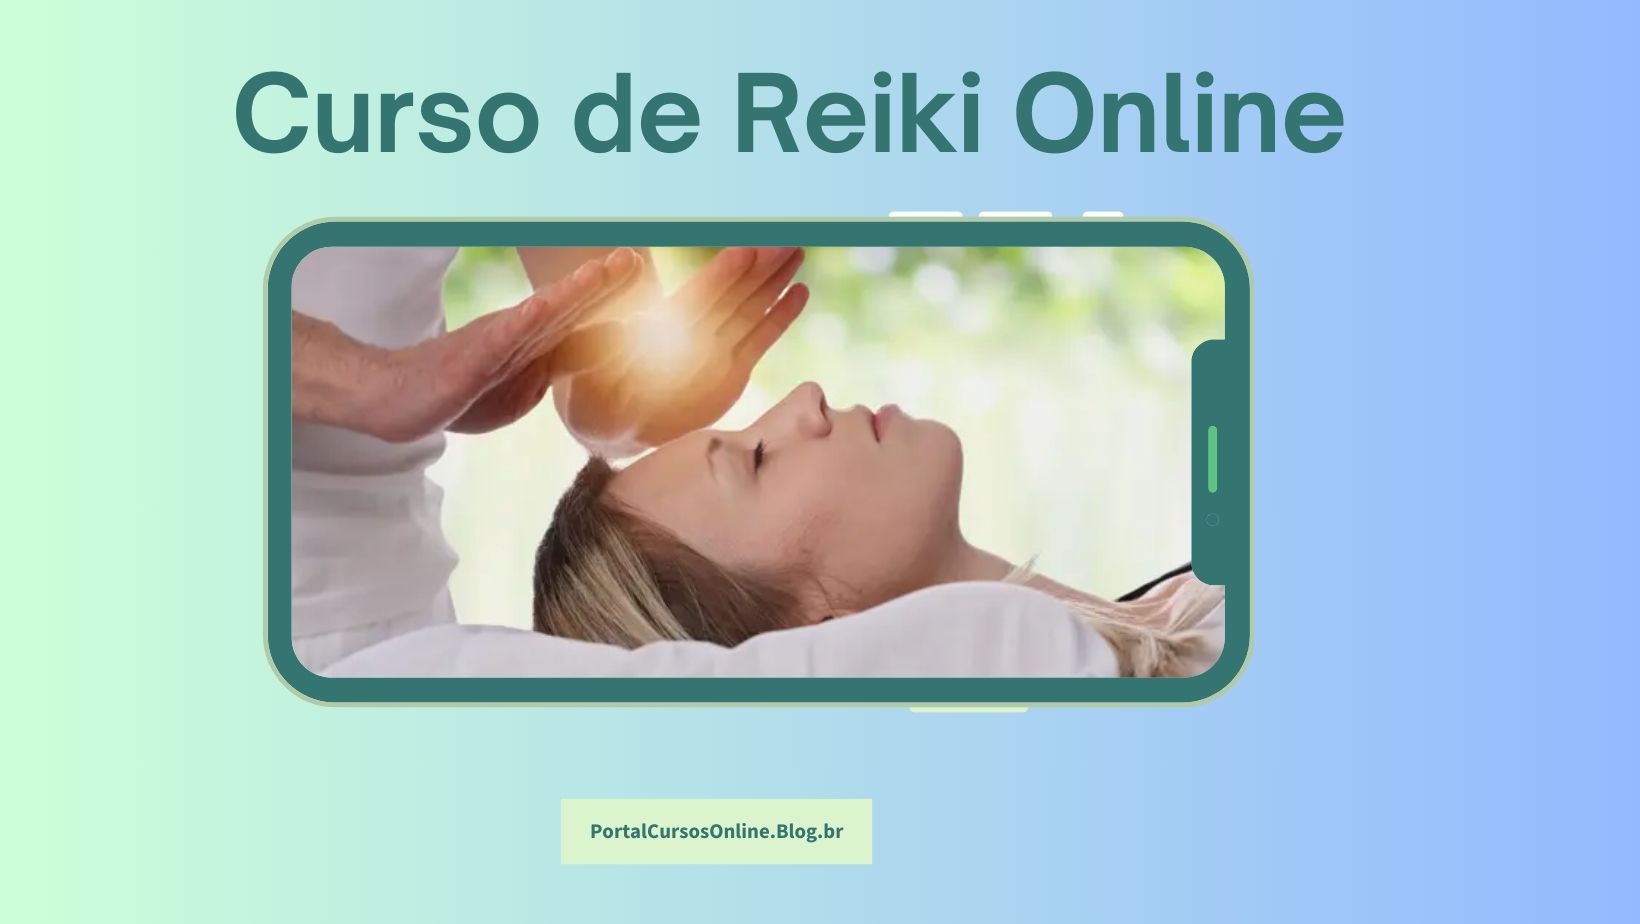 Curso de Reiki online EAD com certificado